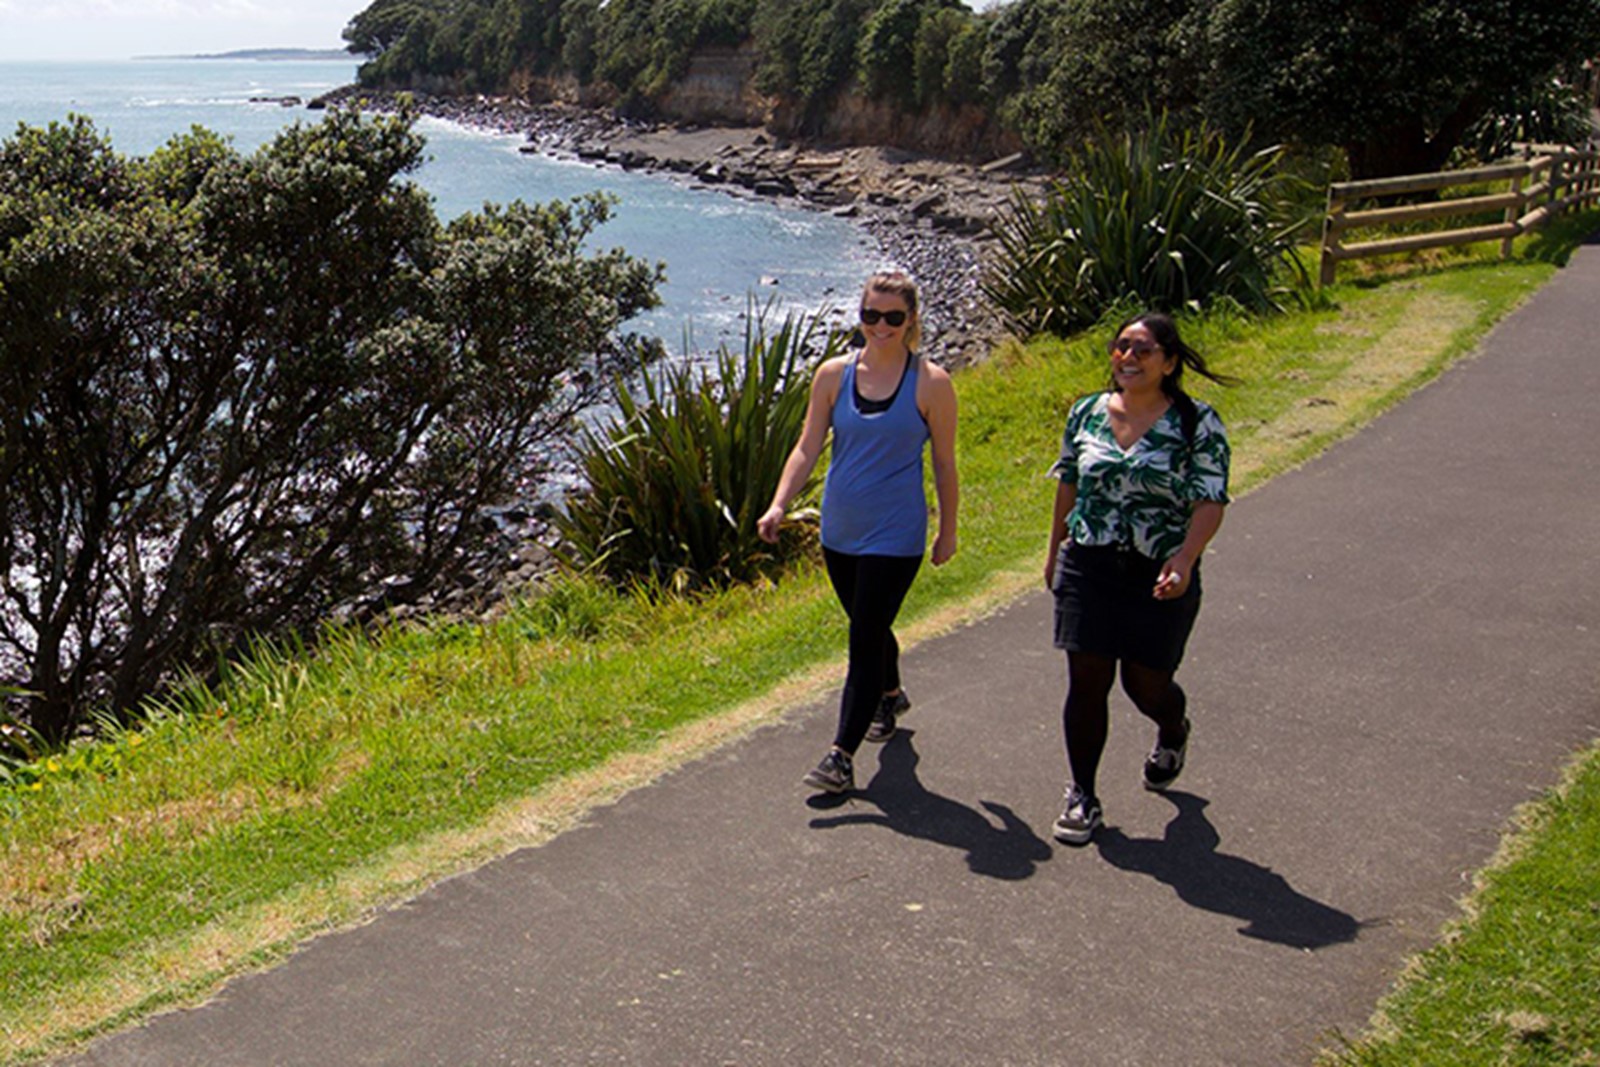 Two women walking on the coastal walkway